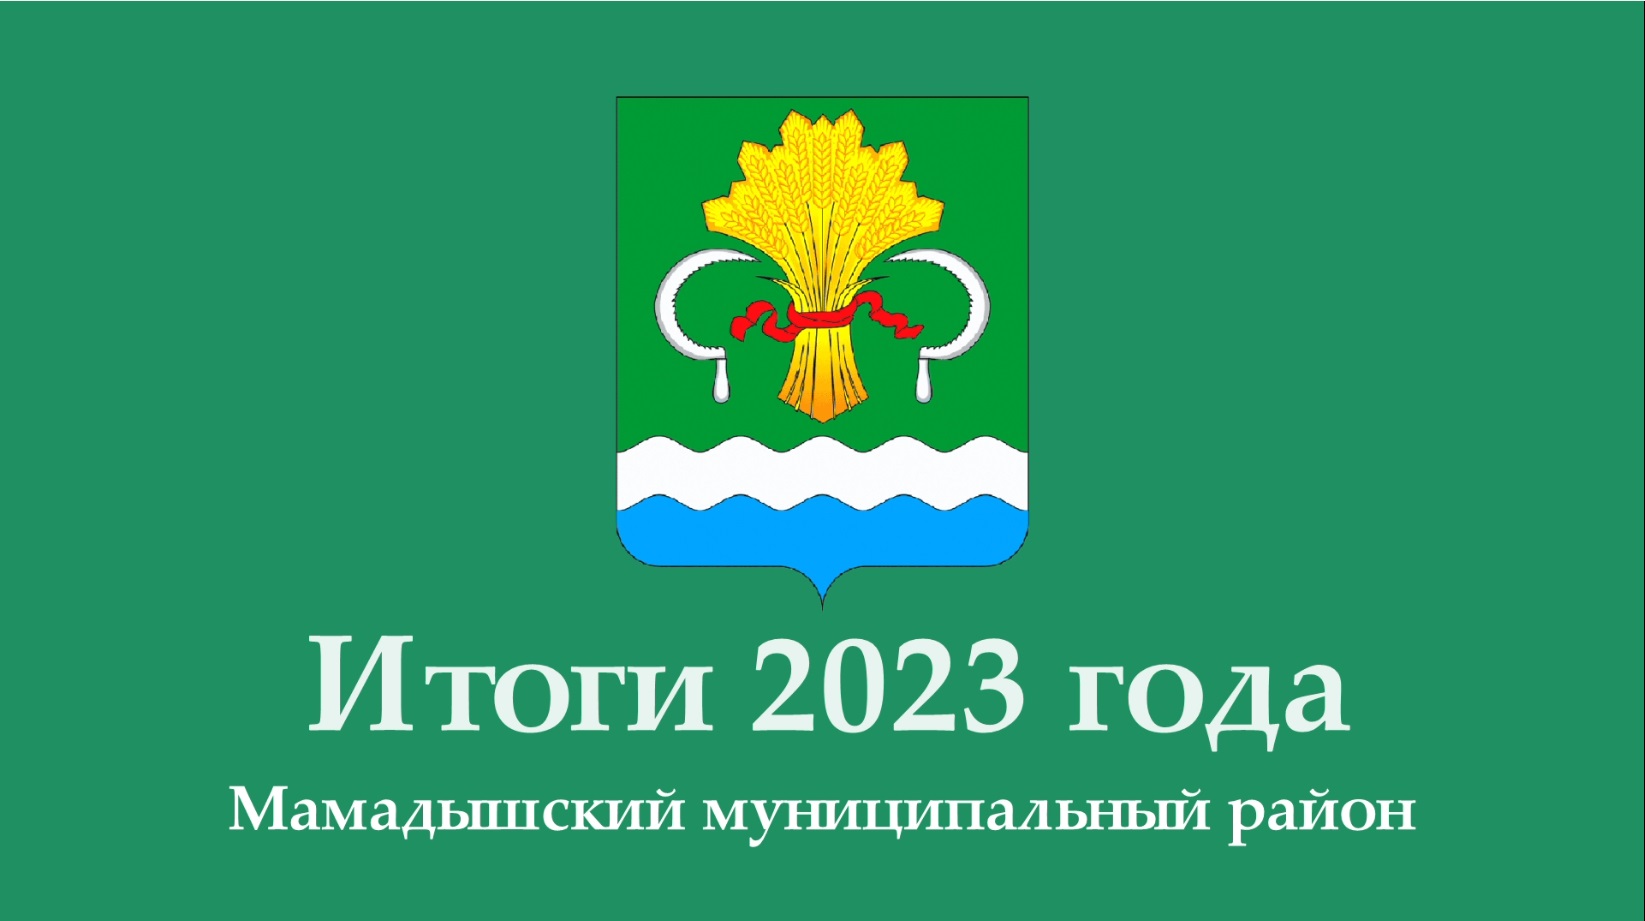 Итоги развития Мамадышского муниципального района за 2023 год